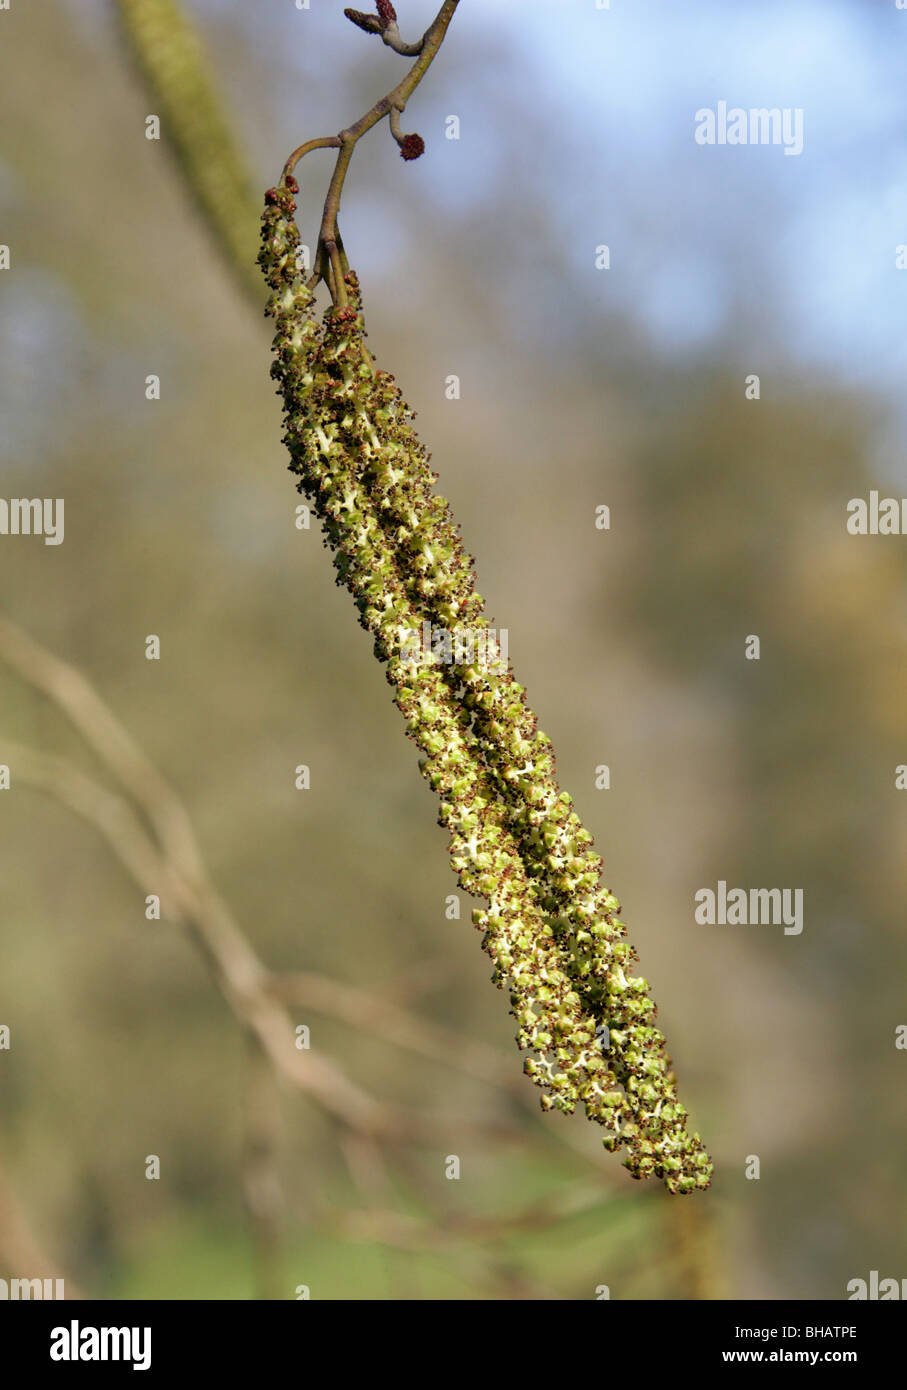 Alder Catkins, Alnus x spaethii (Alnus japonica × Alnus subcordata), Betulaceae Stock Photo